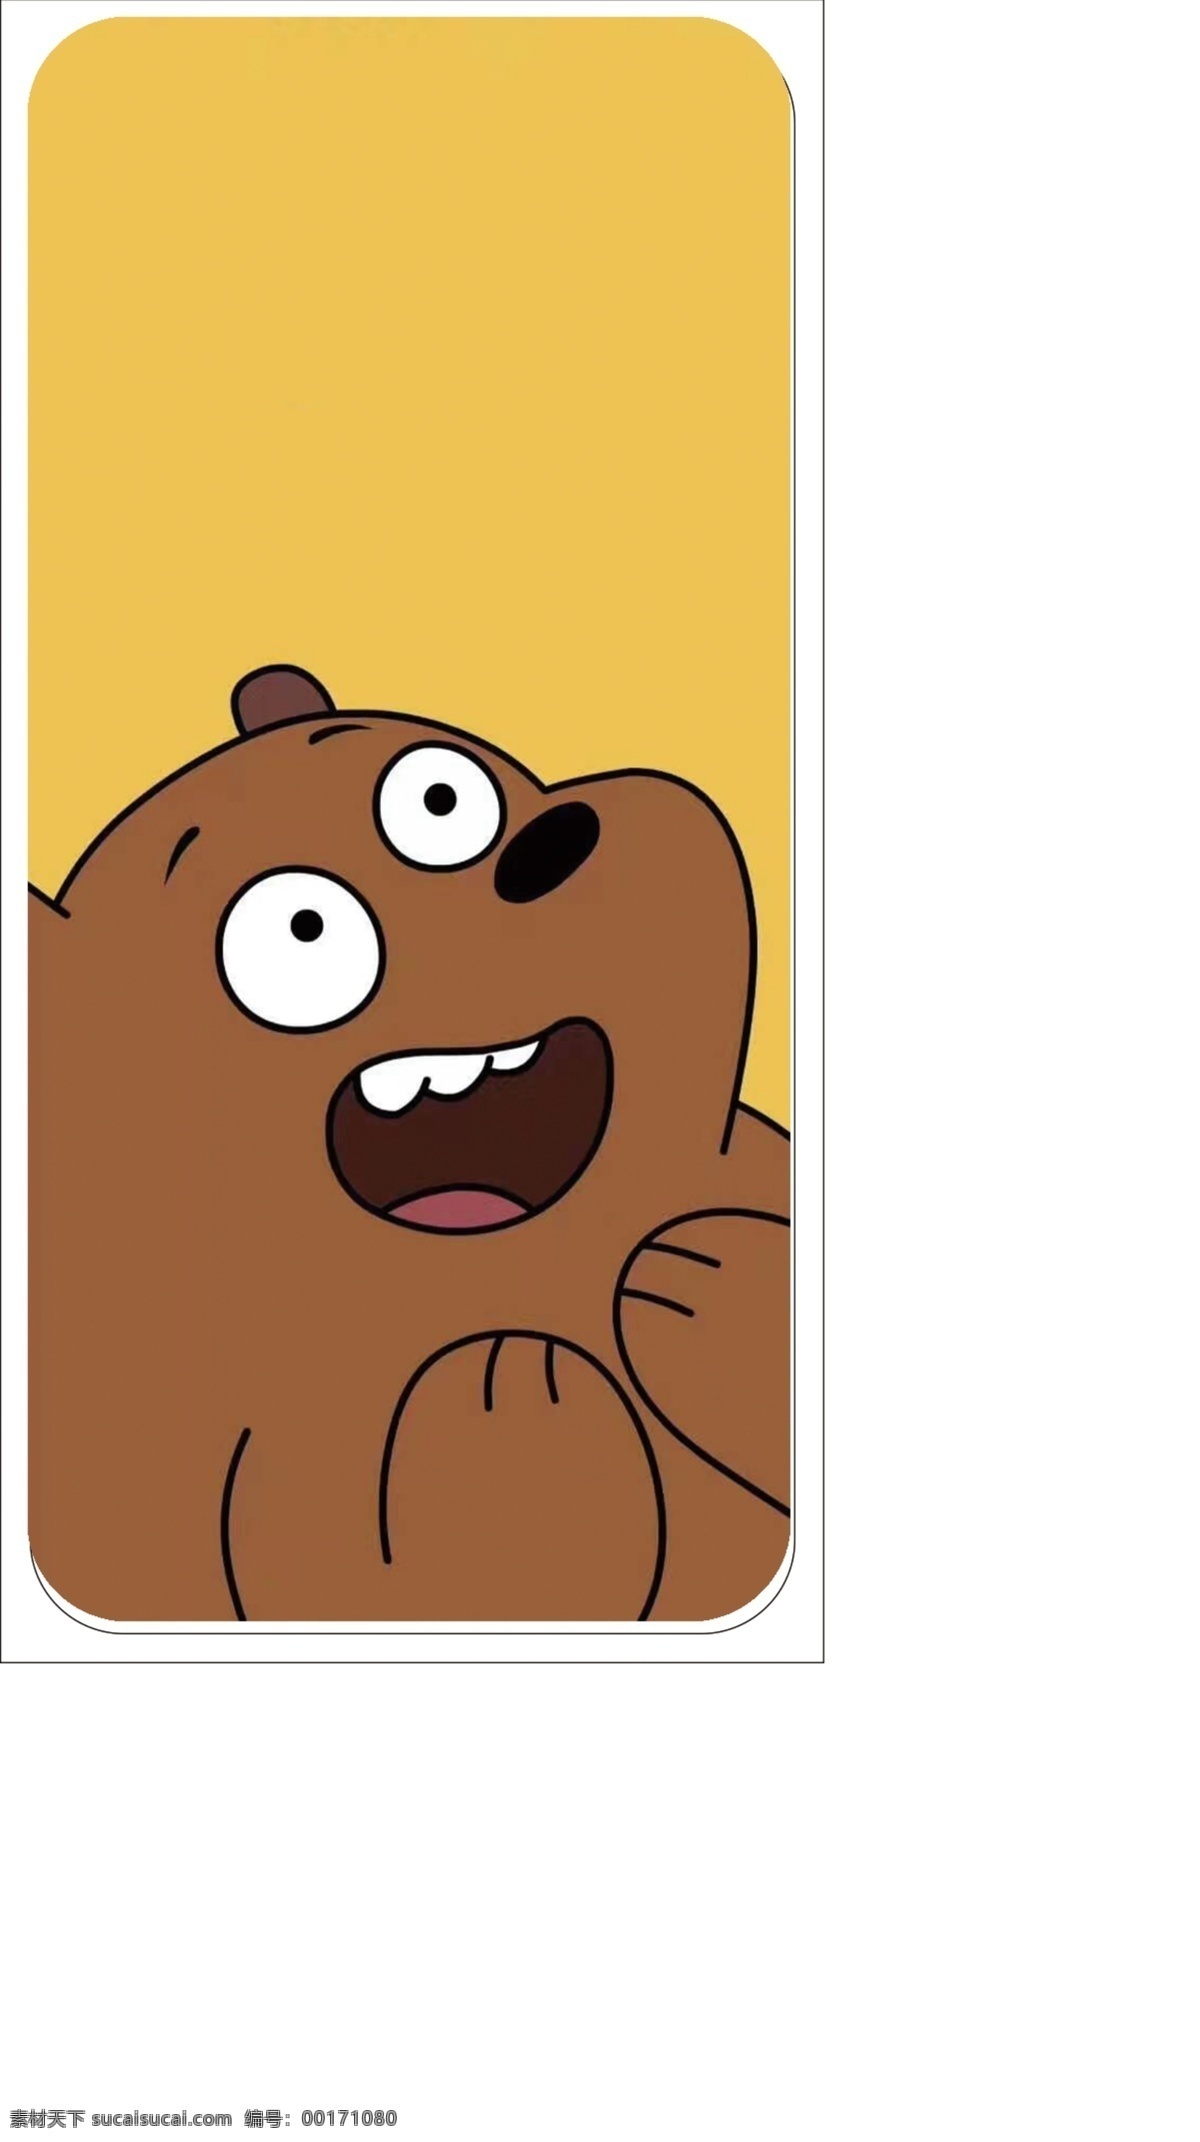 熊 裸熊 手机壳 熊图手机壳 咱们裸熊 卡通手机壳 可爱手机壳 动漫动画 动漫人物